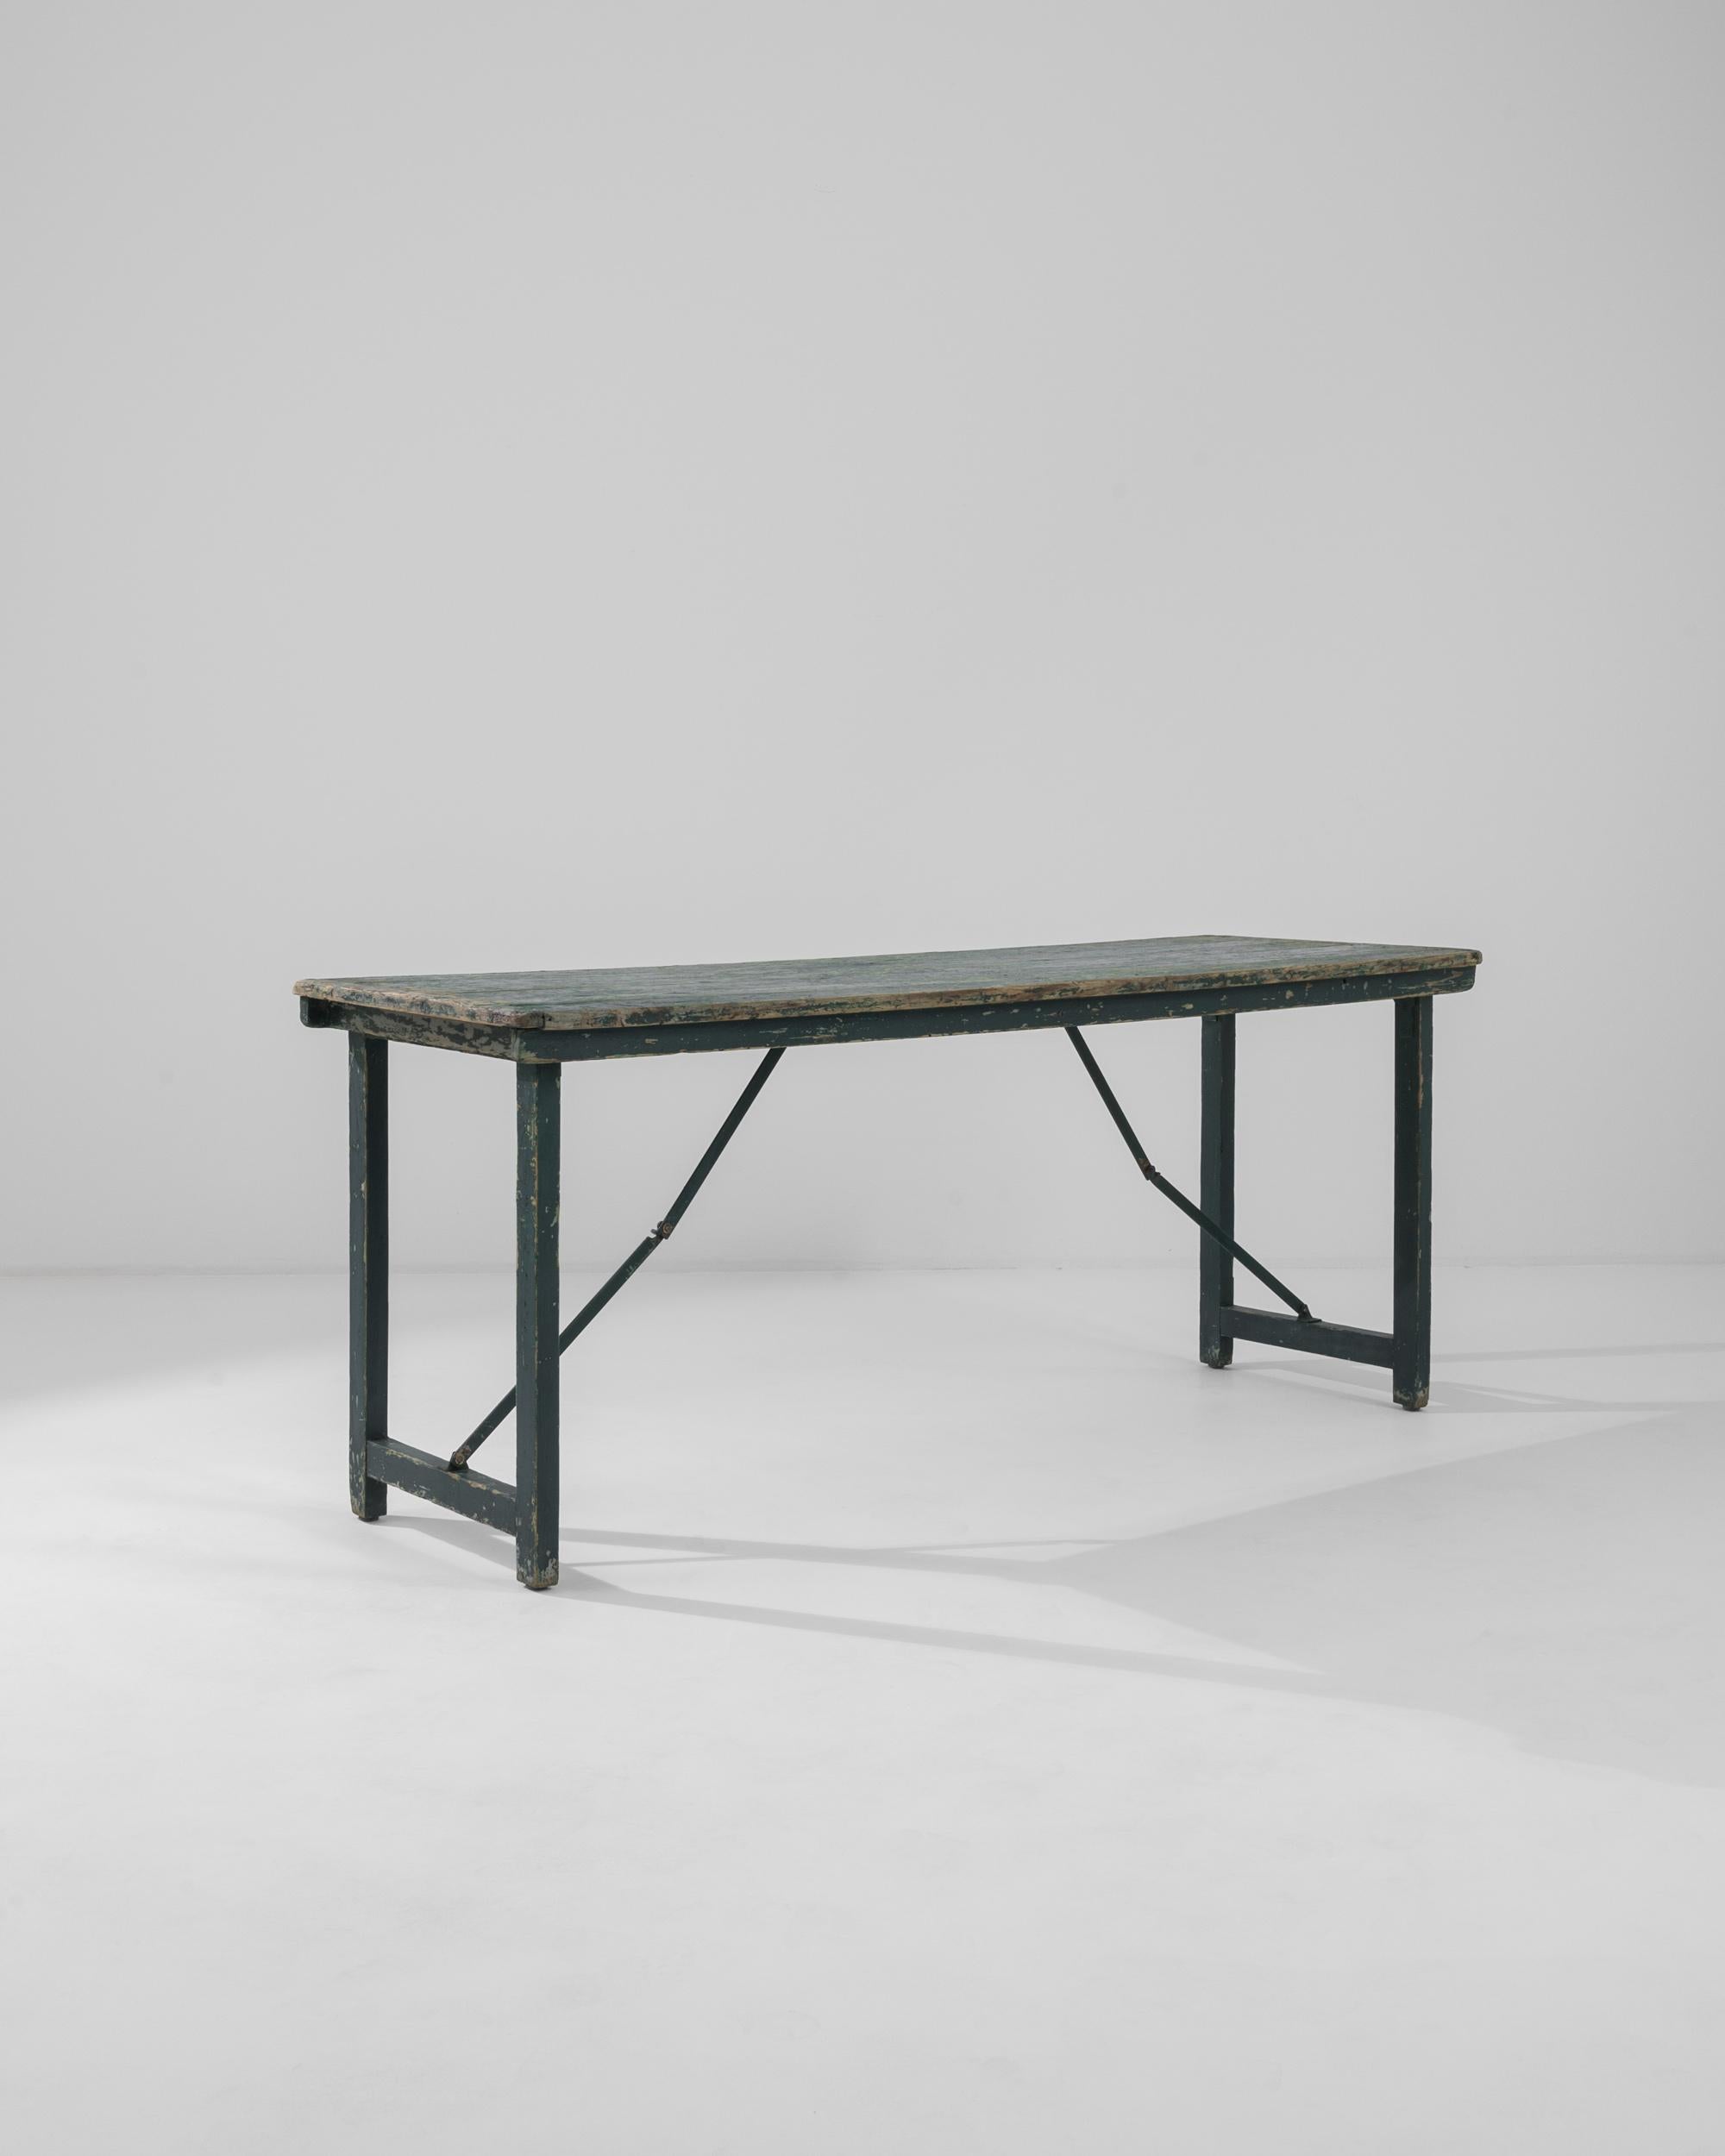 Table de salle à manger en bois du XXe siècle produite en France, cette belle table pliante patinée est un bijou de simplicité et de fonctionnalité. Présentant une riche palette de vert forêt avec des nuances de jade et de sarcelle, la patine